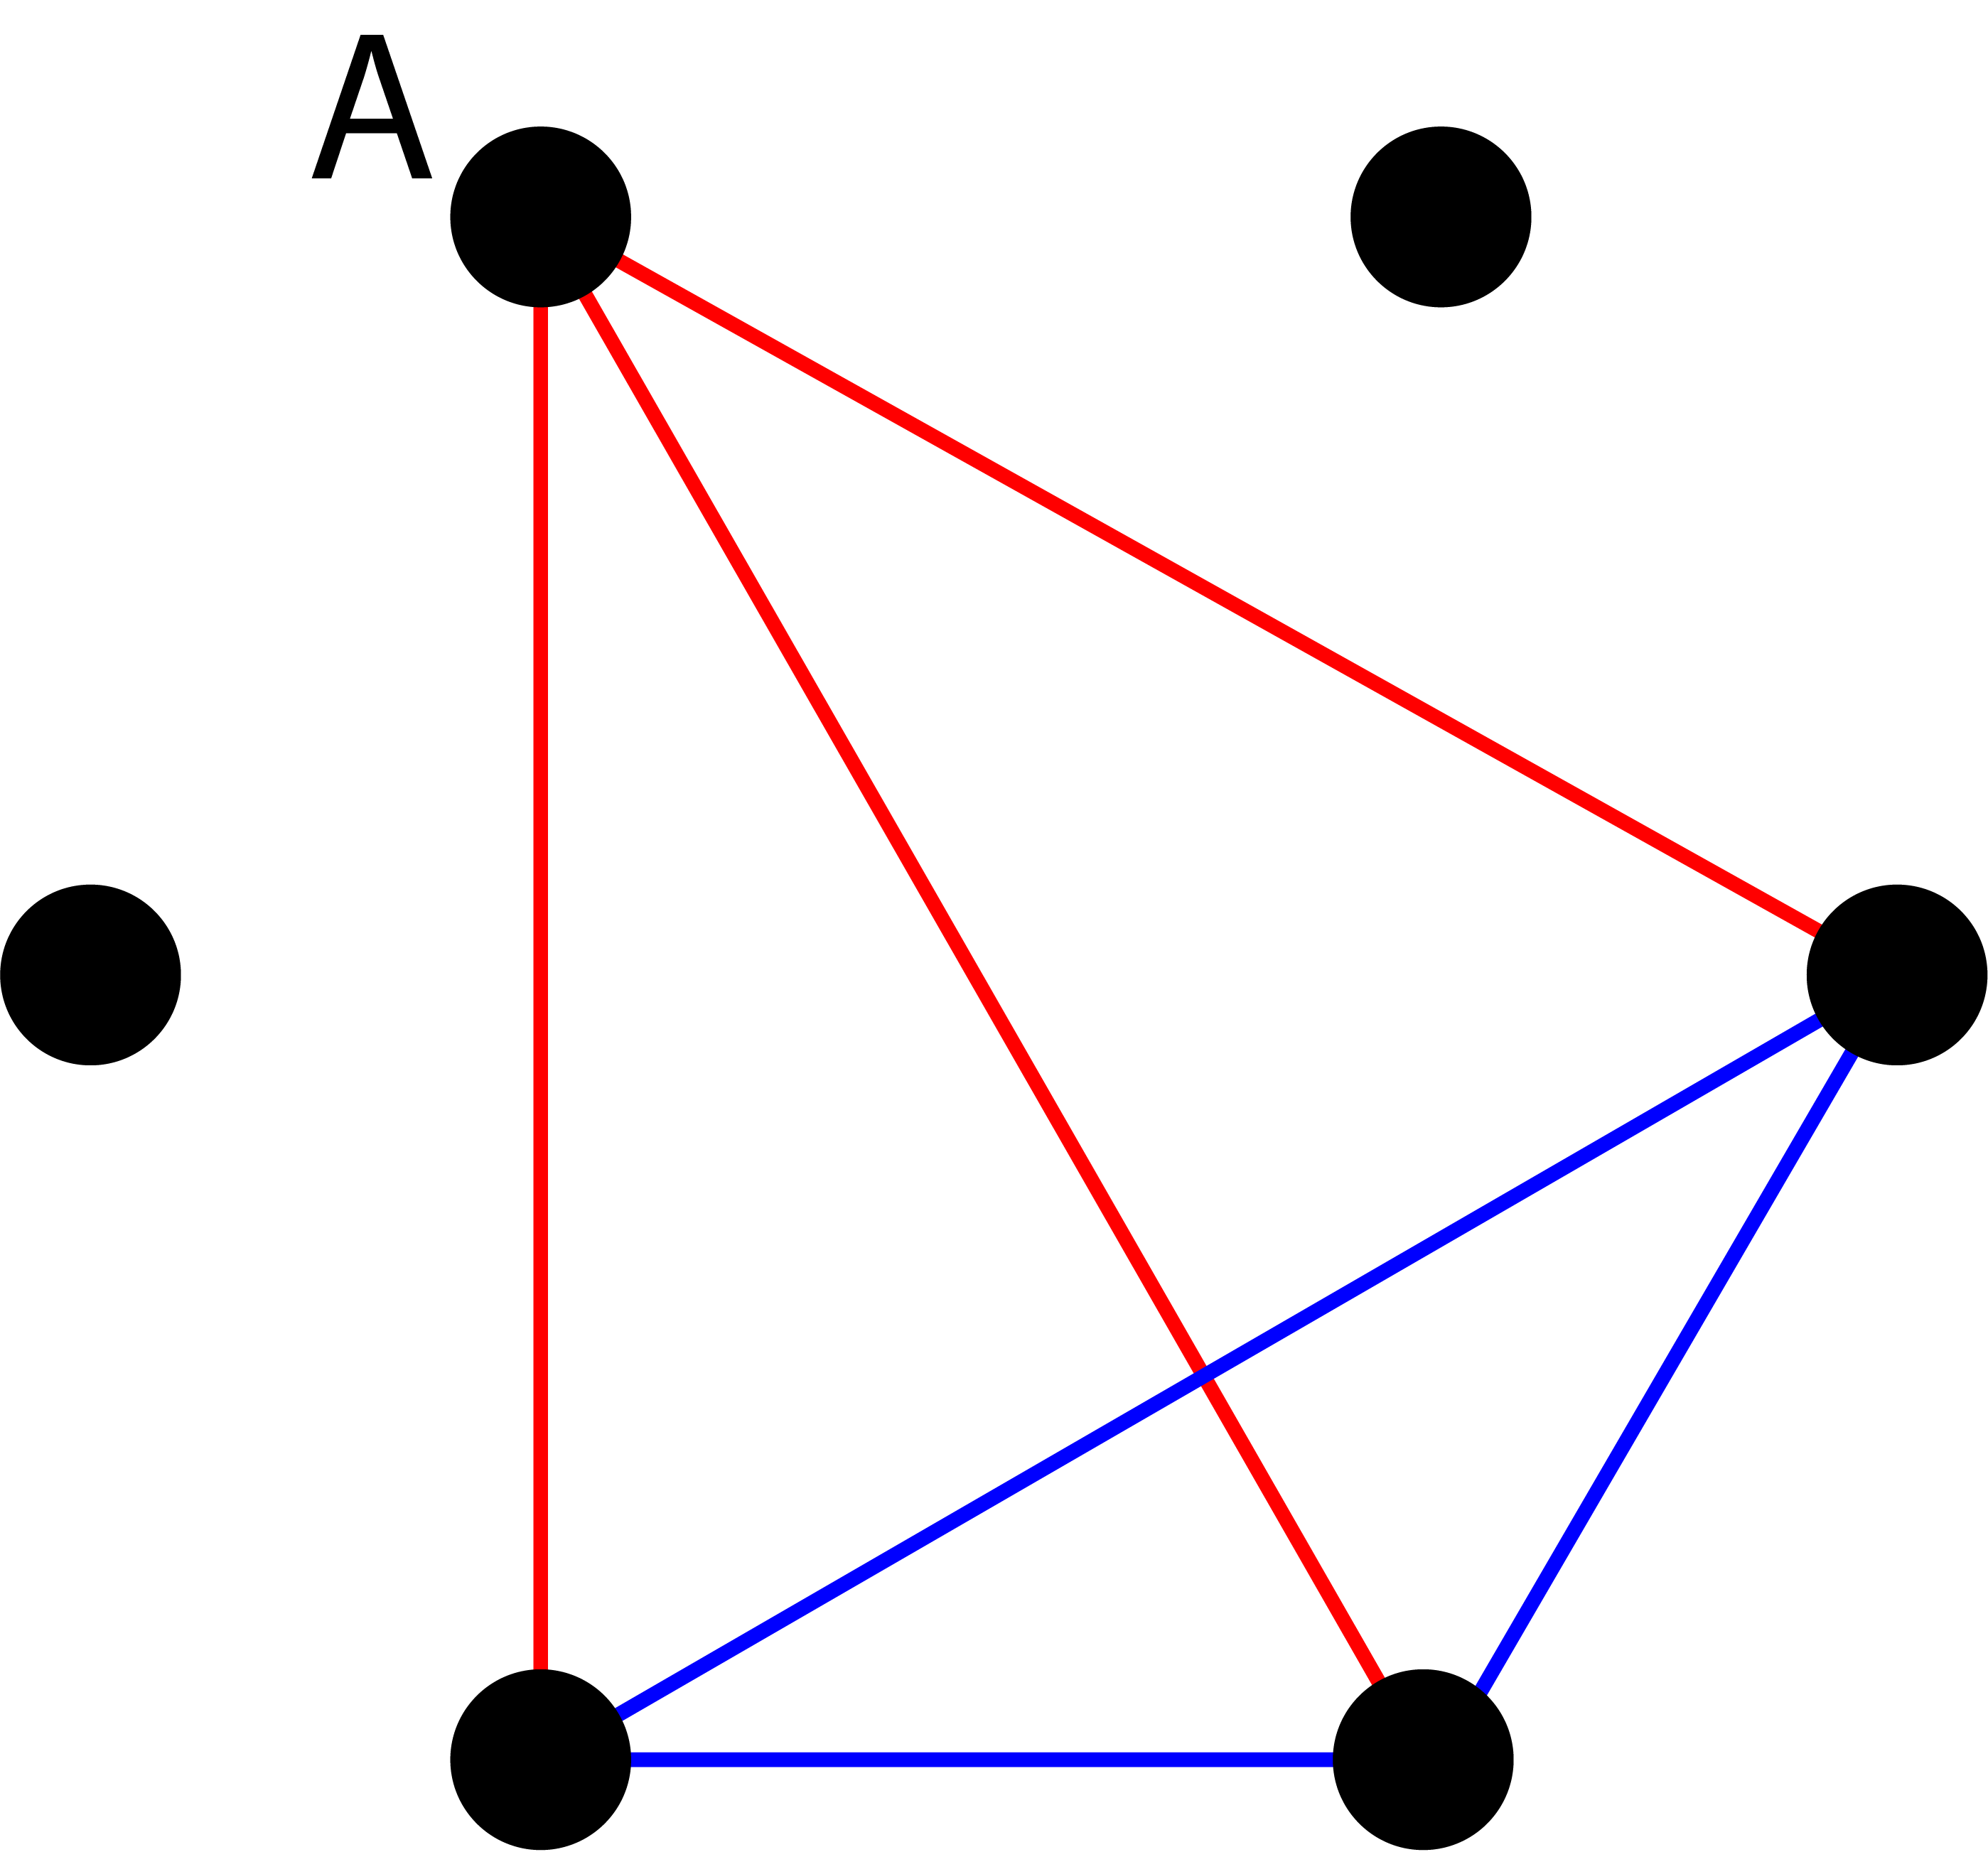 Altı nokta, üç kırmızı çizgi ve üç mavi çizgi.